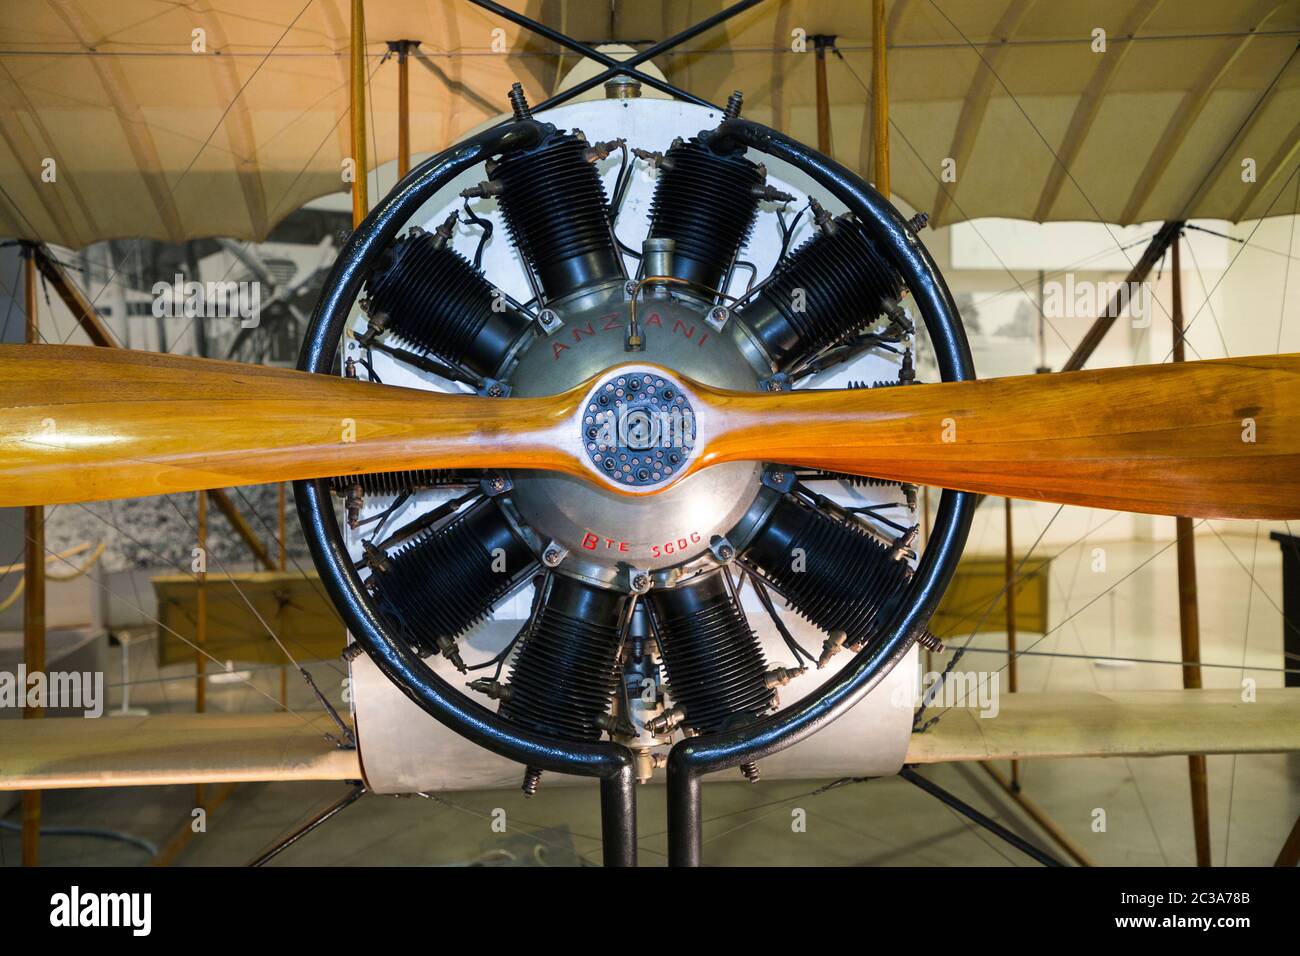 Caudron G.3 biplan, alimenté par l'Anzani 10, un moteur radial d'avion 10  cylindres refroidi par air / moteur rotatif. L'avion français a volé de  1914 pendant la première Guerre mondiale et après,